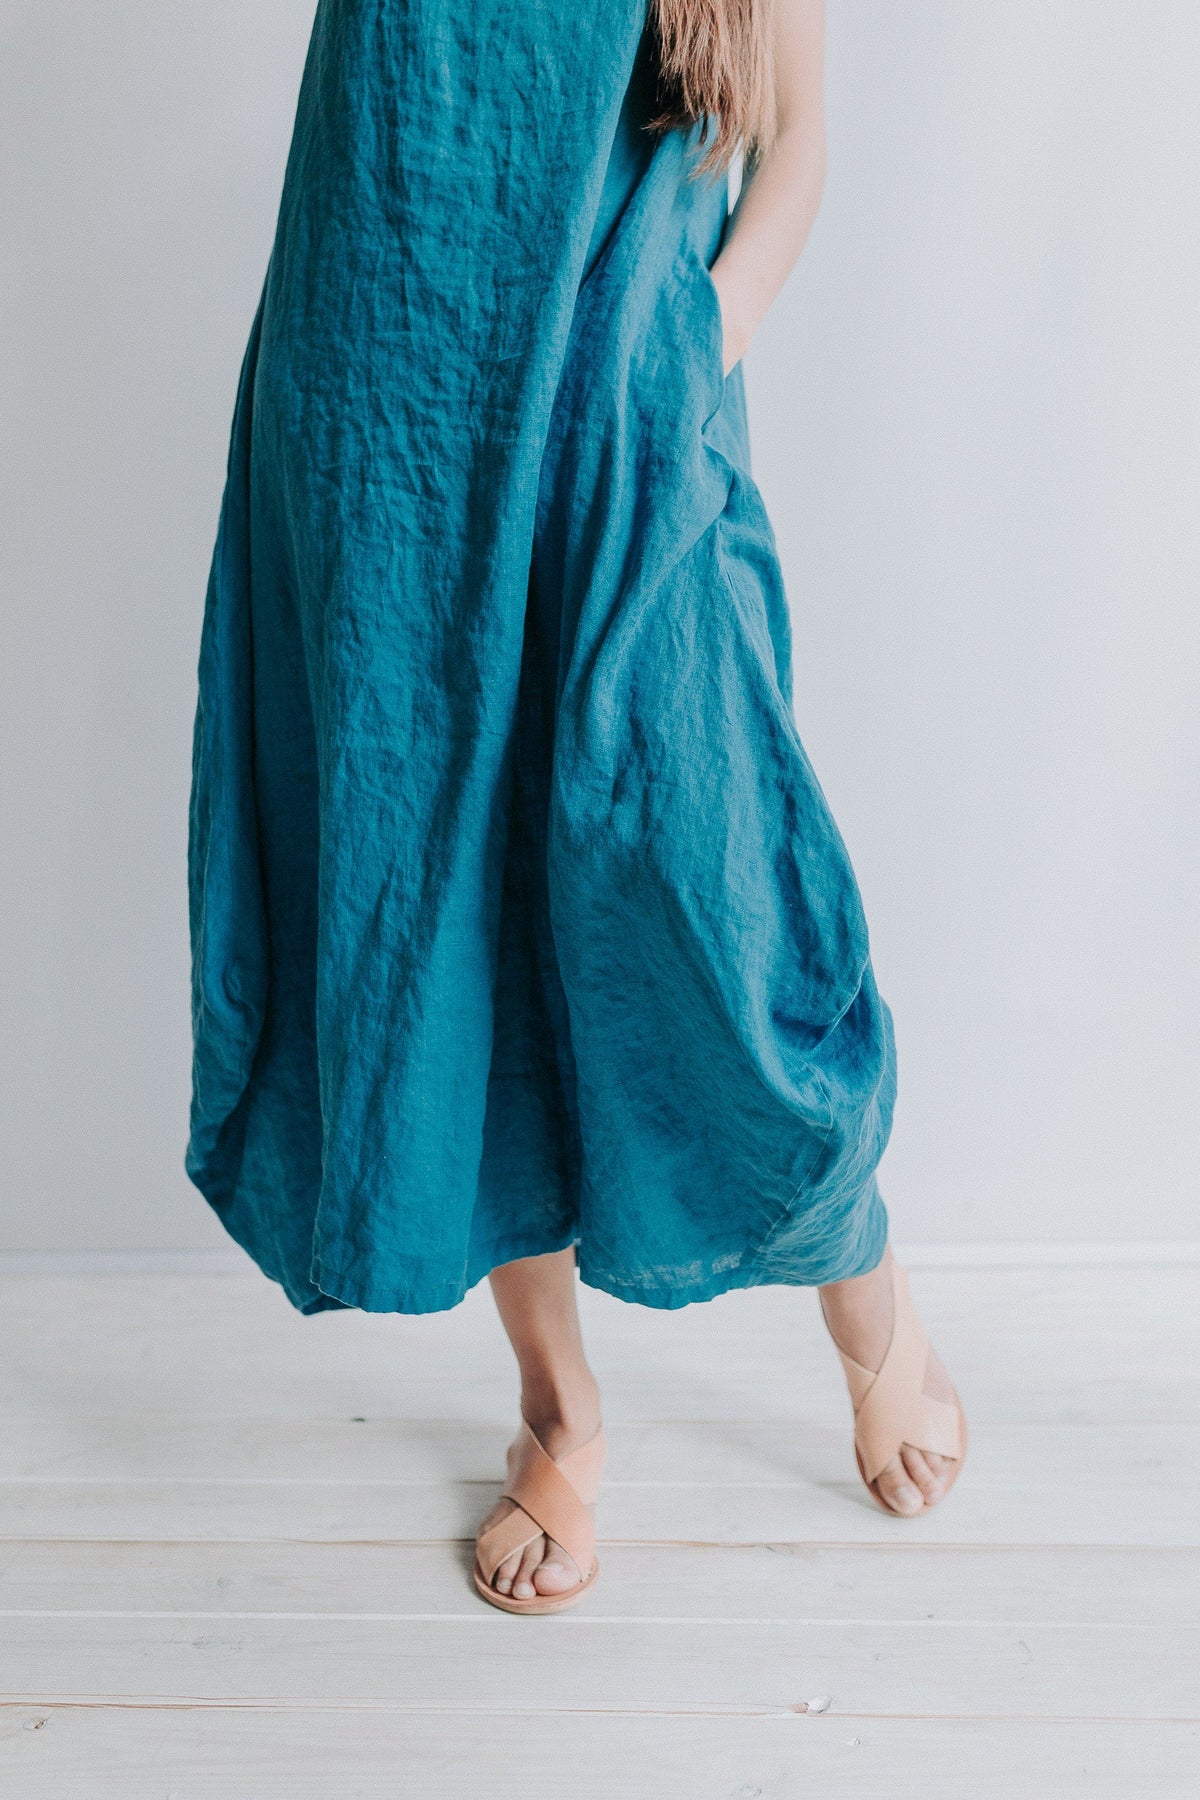 Sleeveless Linen Dress Anna with Pockets - Linenbee